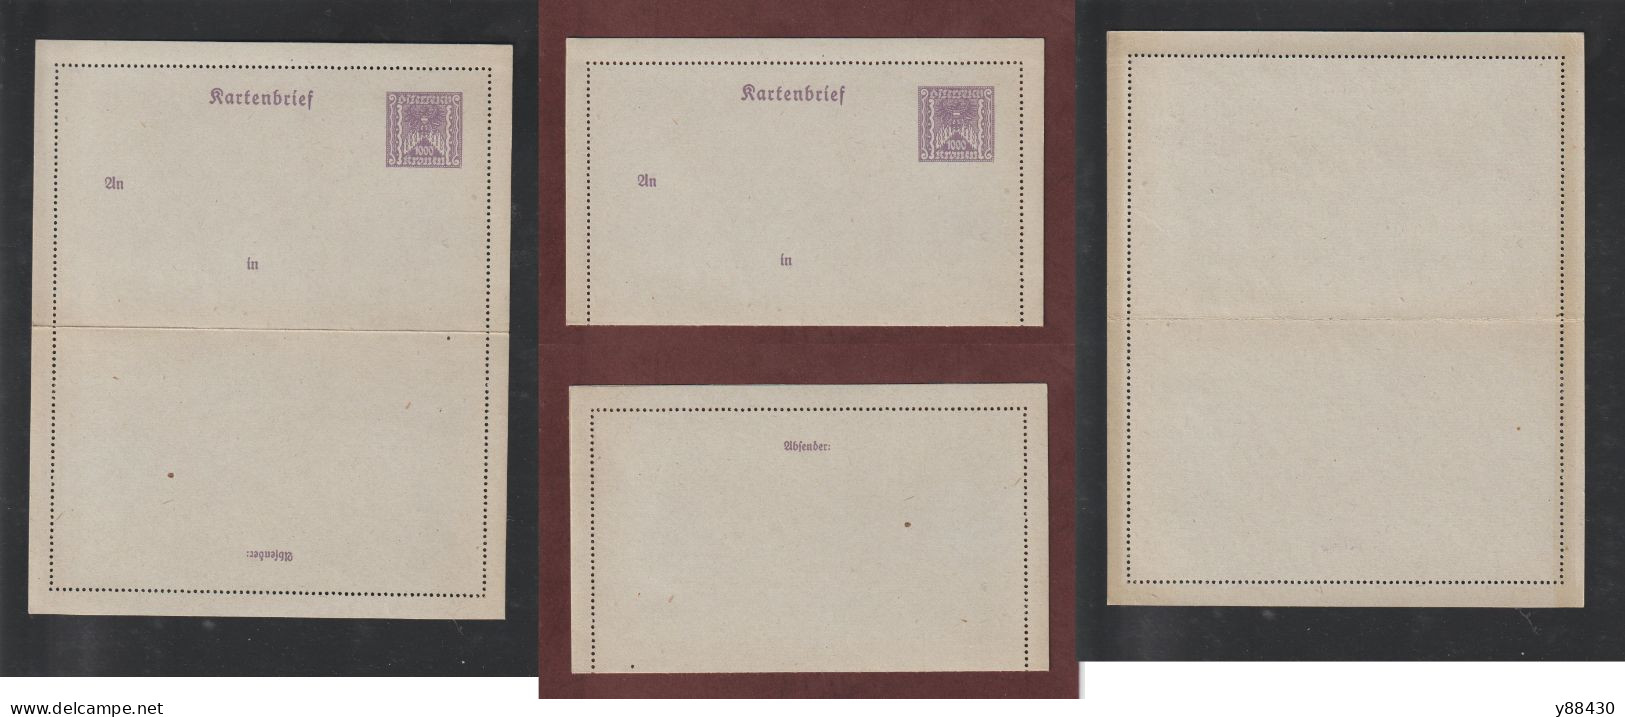 AUTRICHE - Entier Postal Neuf - 1910/1930 - Entier Sur Carte Lettre Gommé  - 1000k. Violet  - 5 Scan - Cartes-lettres